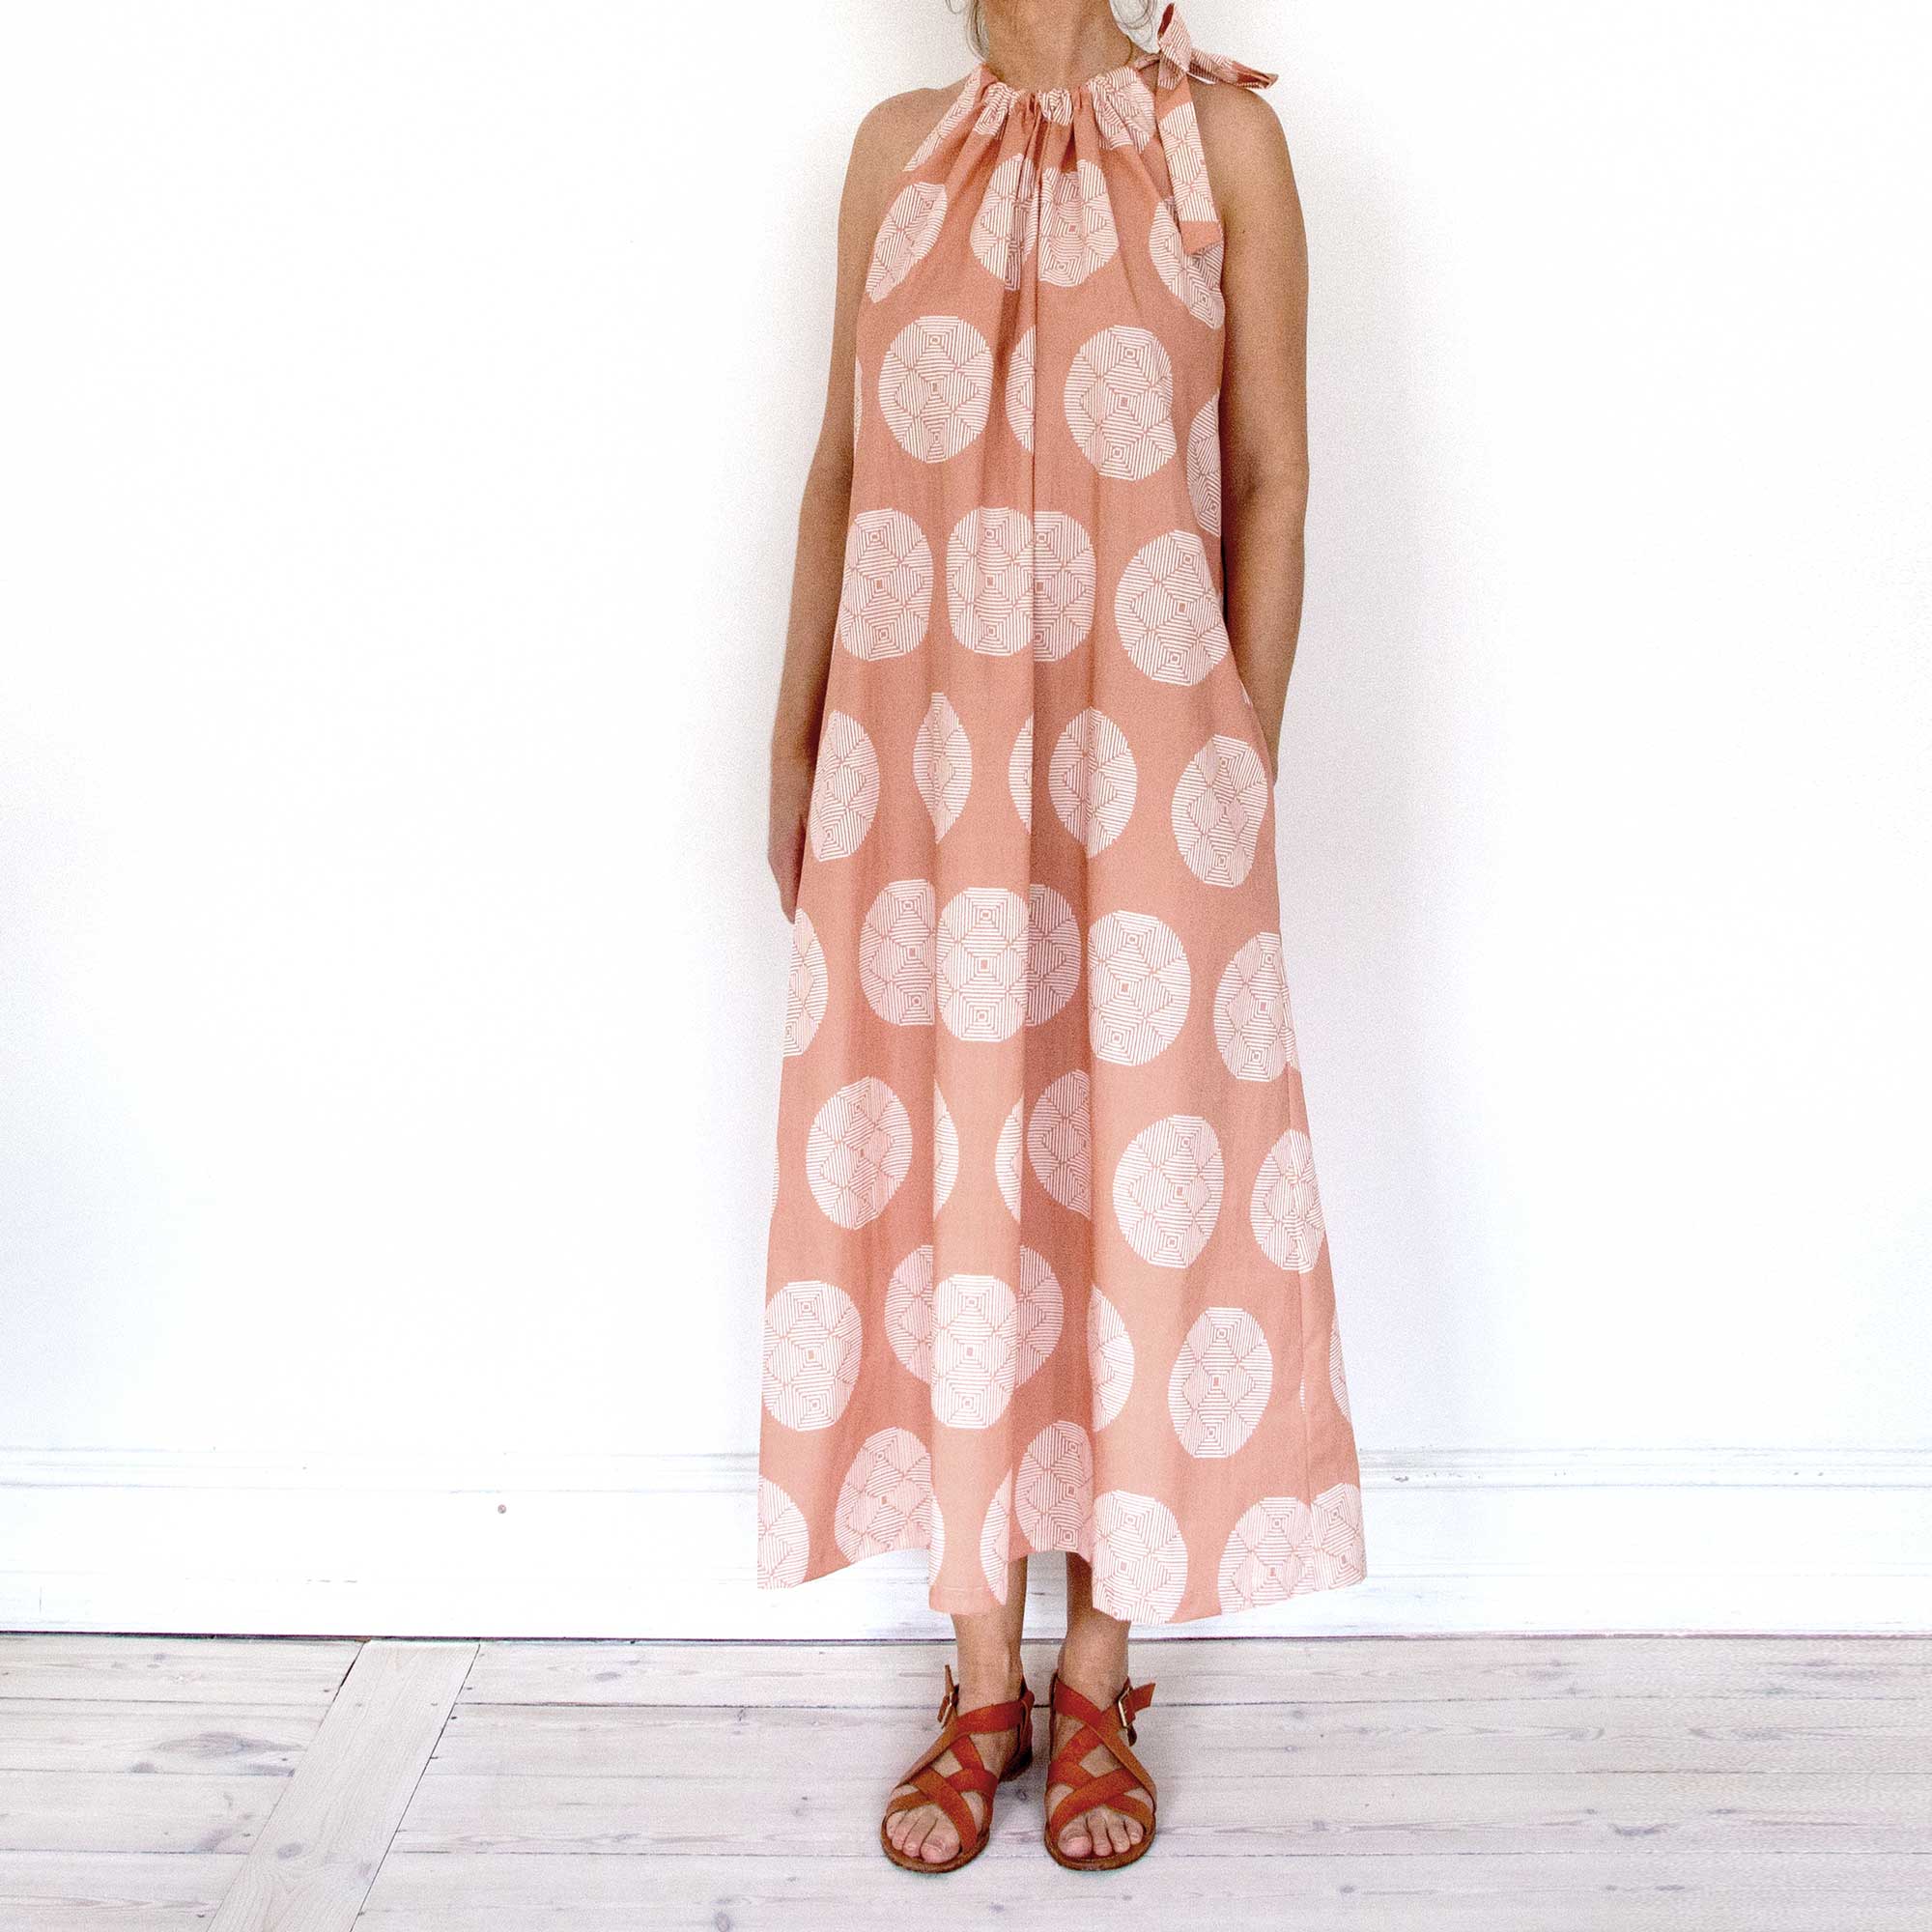 Leh kjole, Hana terracotta i økologisk bomuld, trykt i Tyskland syet i Danmark. Design Anne Rosenberg